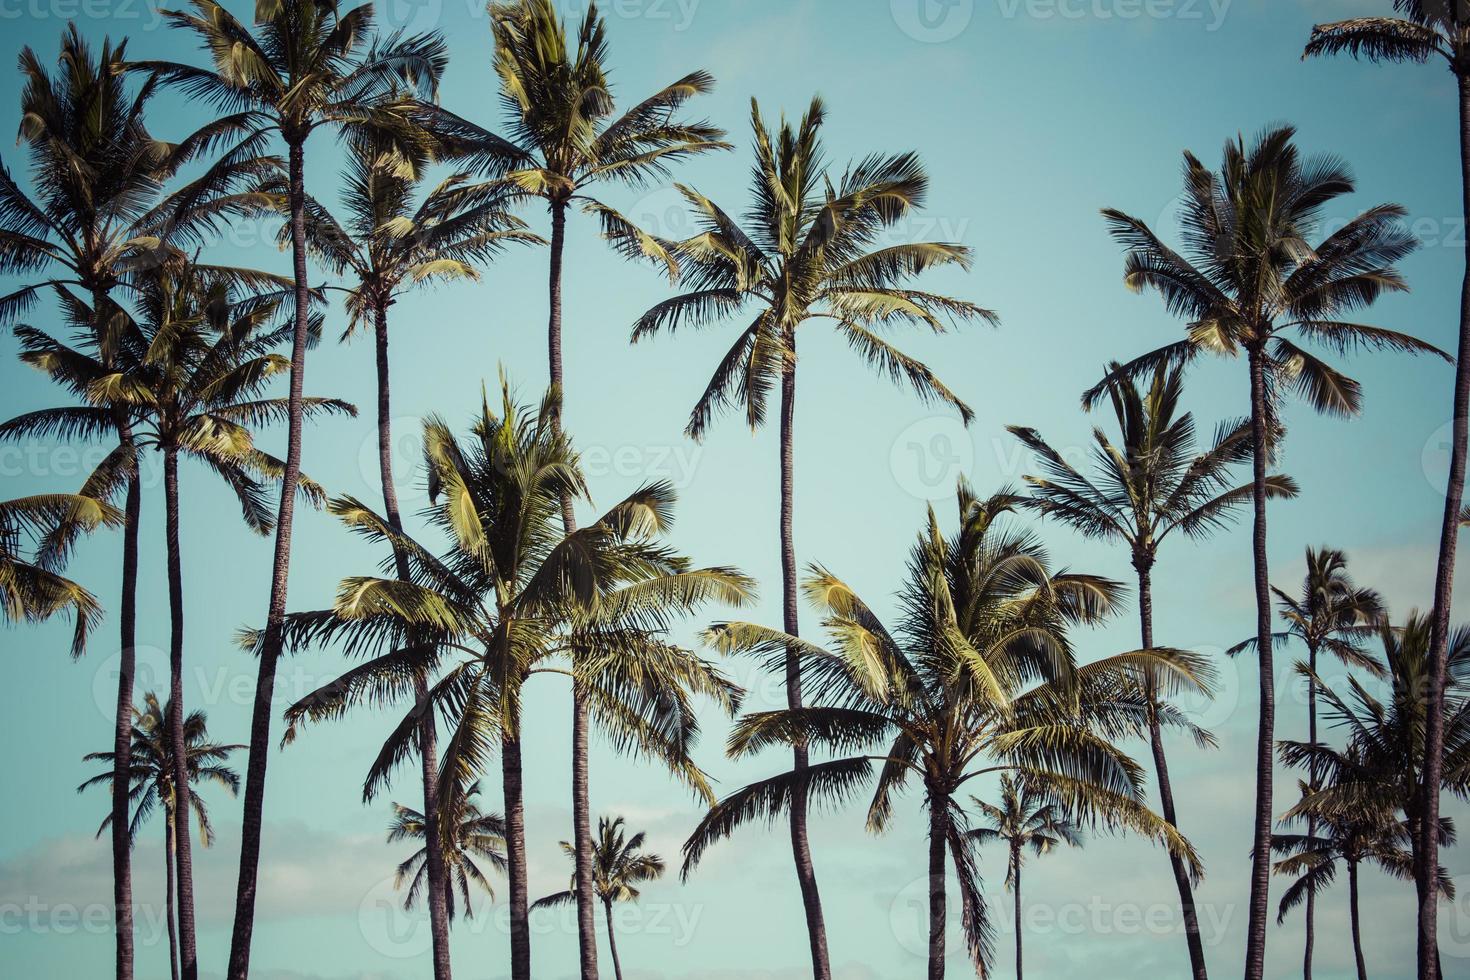 kokosnöt palm i hawaii, usa. foto